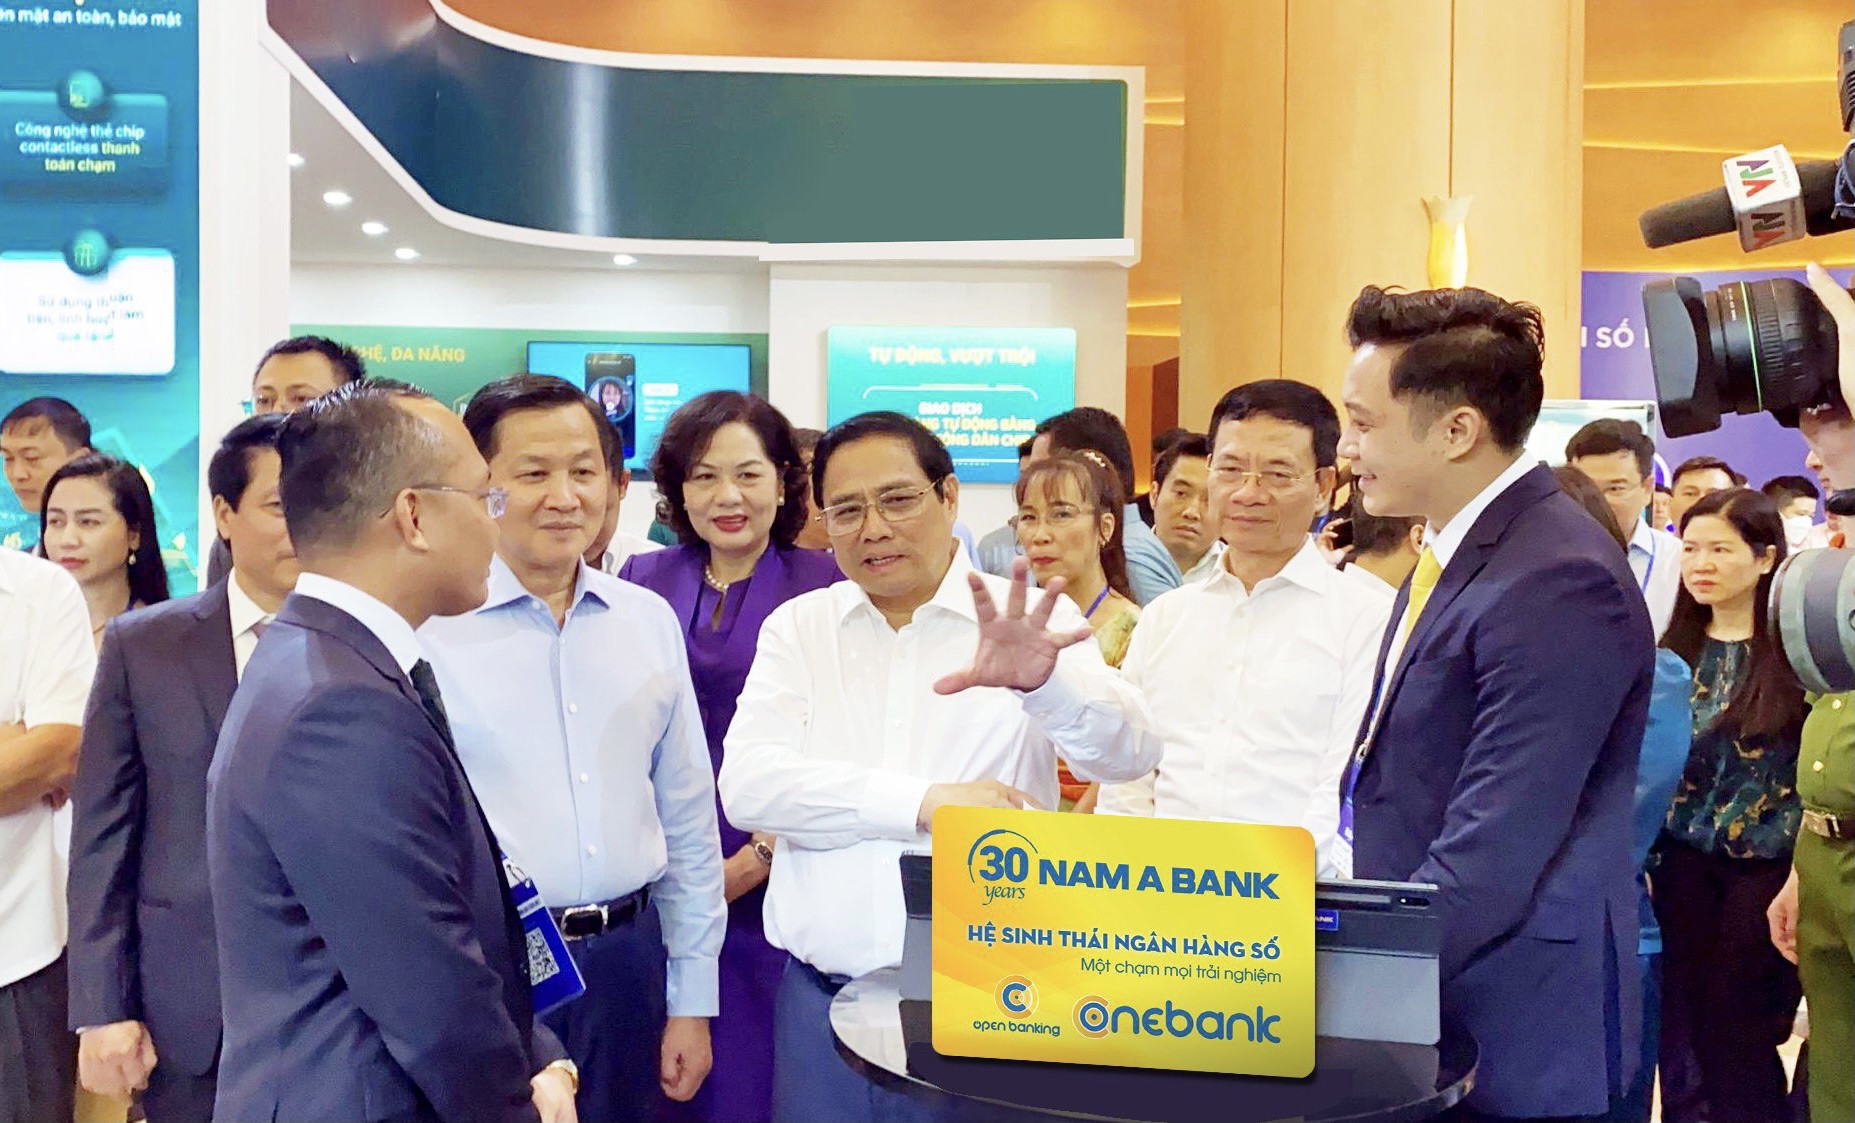 Chuyển đổi số ngành ngân hàng: Nam A Bank ‘trình làng’ nhiều công nghệ ưu việt